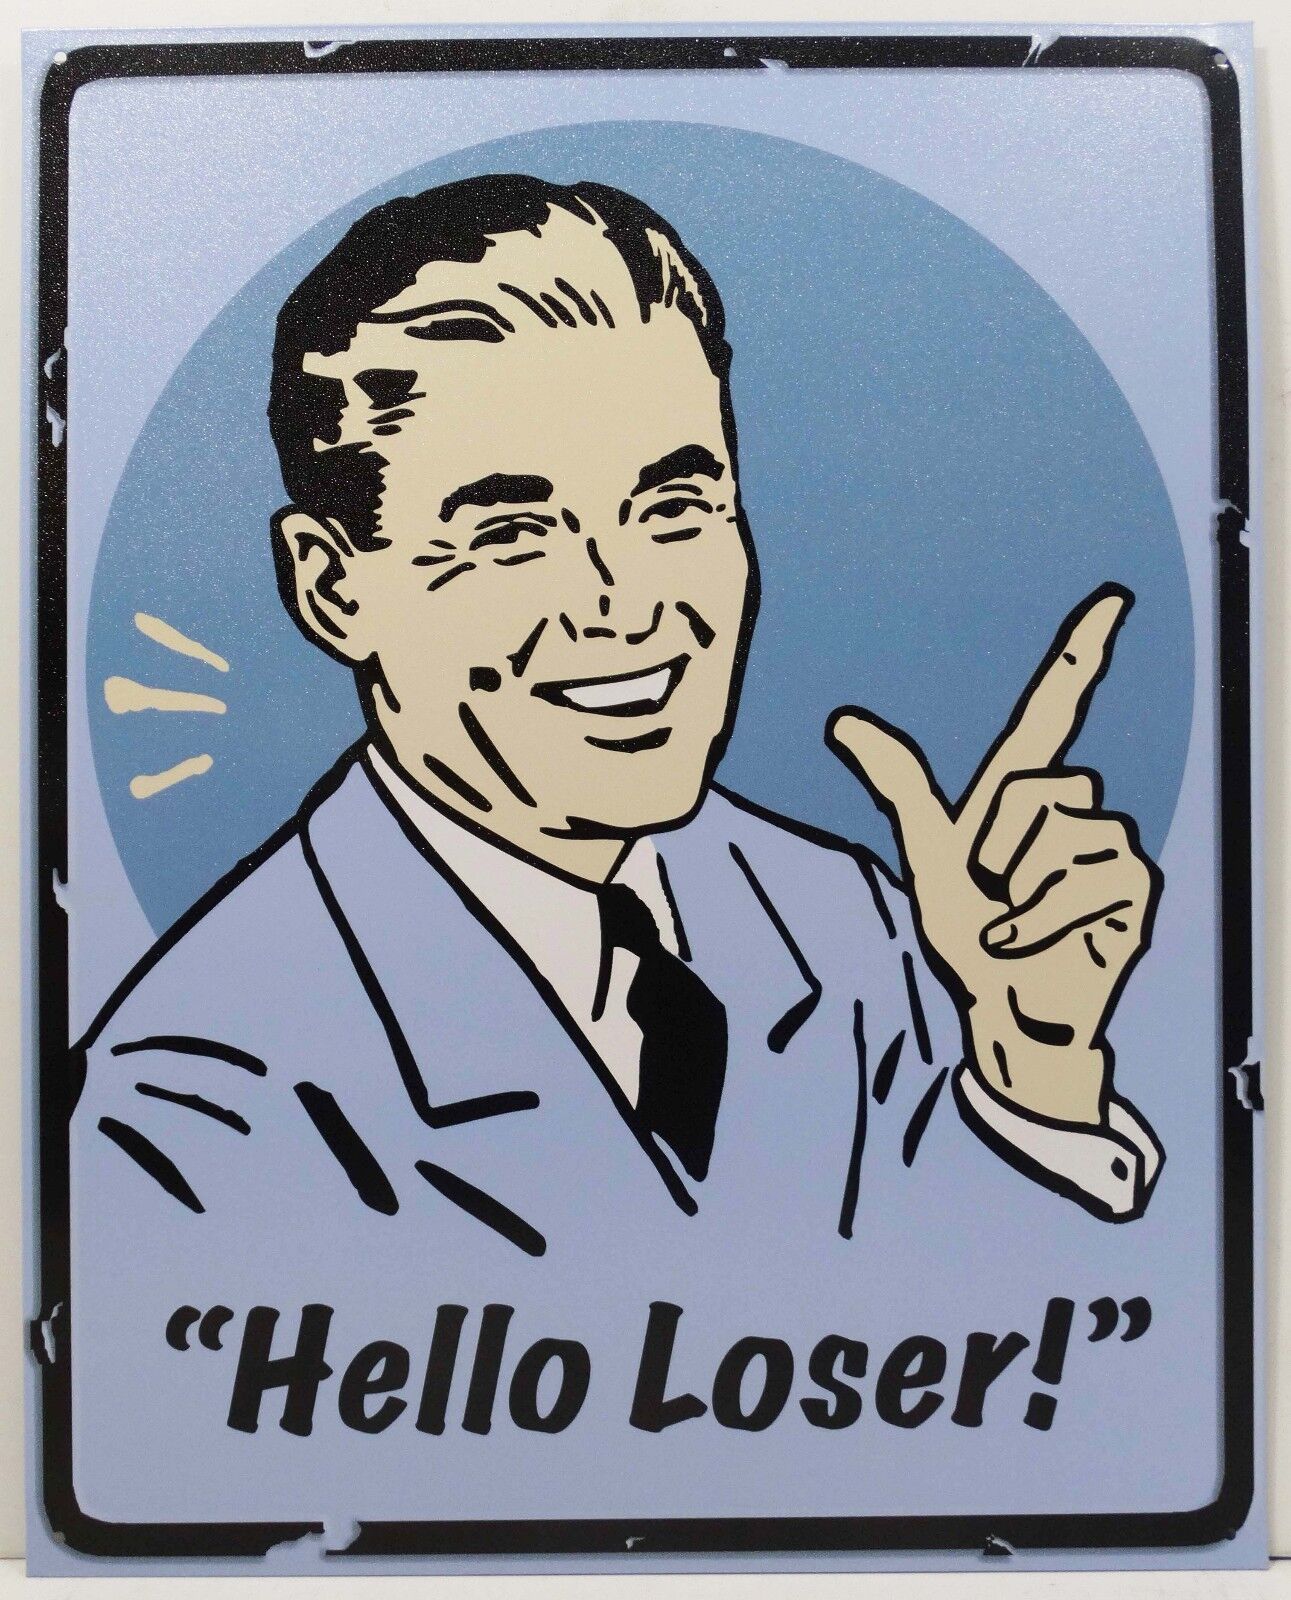 Hello Loser Retro Fifties Man Humor Metal Sign Ebay